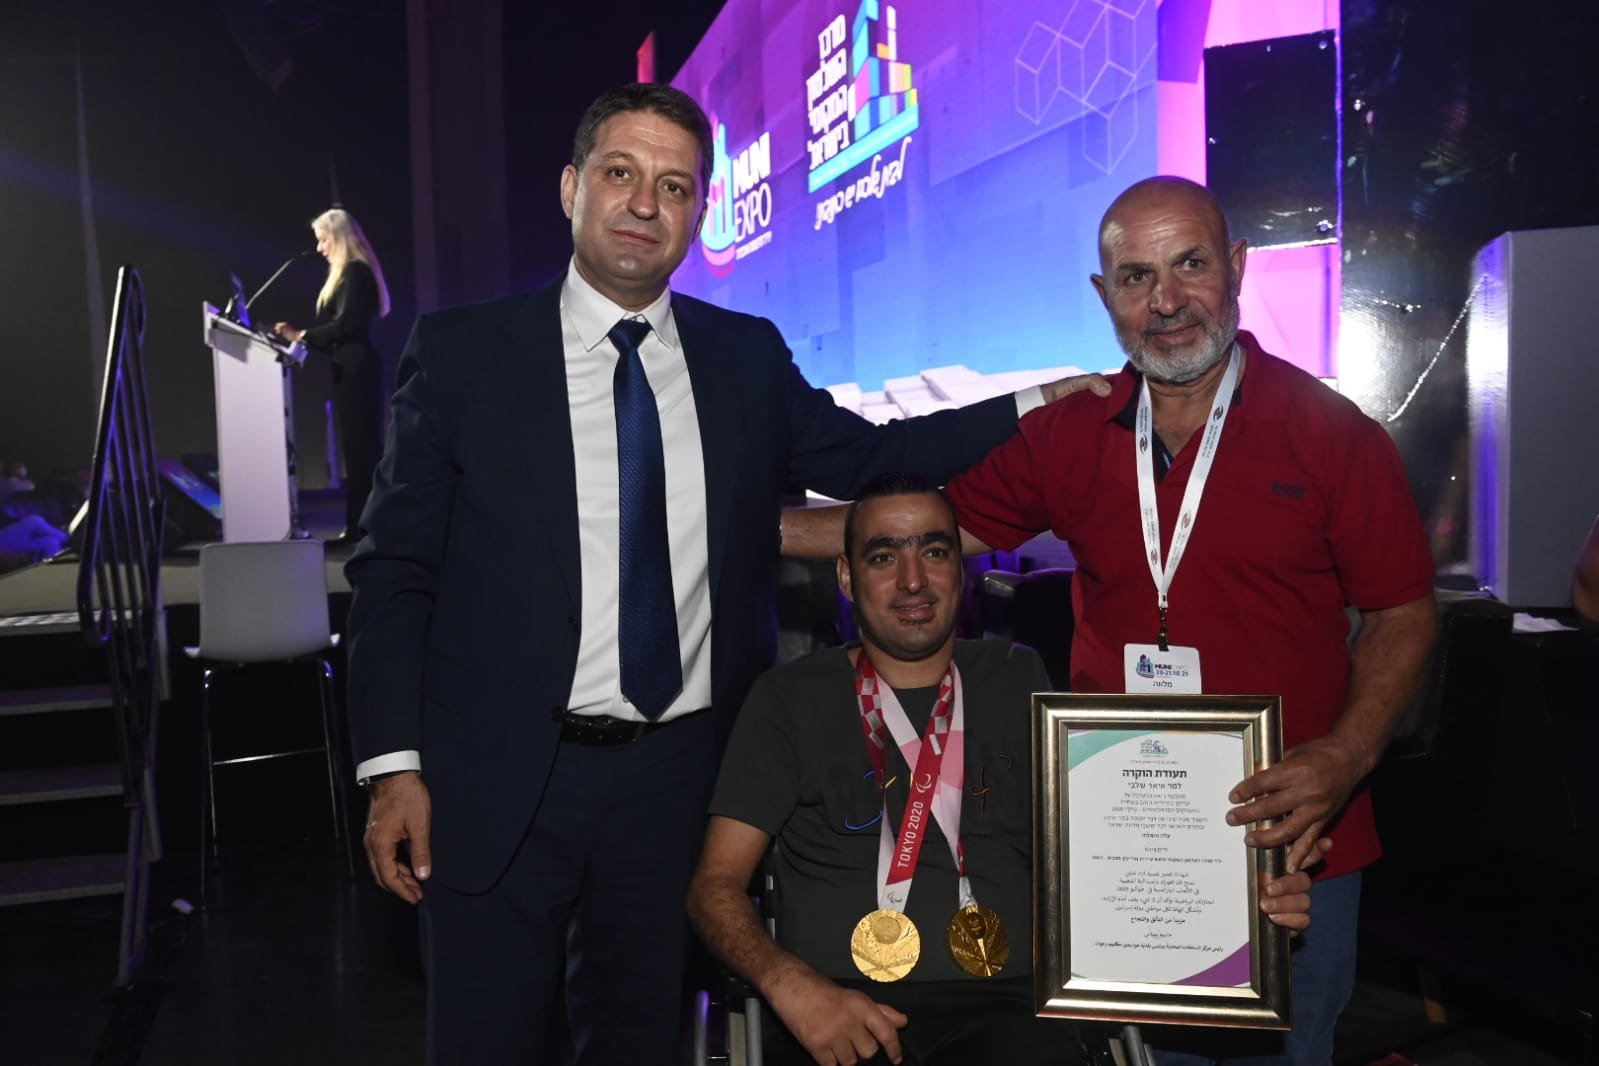 مركز السلطات المحلية يمنح شهادة تقدير للسباح الأولمبي إياد شلبي خلال مؤتمر "موني إكسبو 2021" في تل أبيب-0